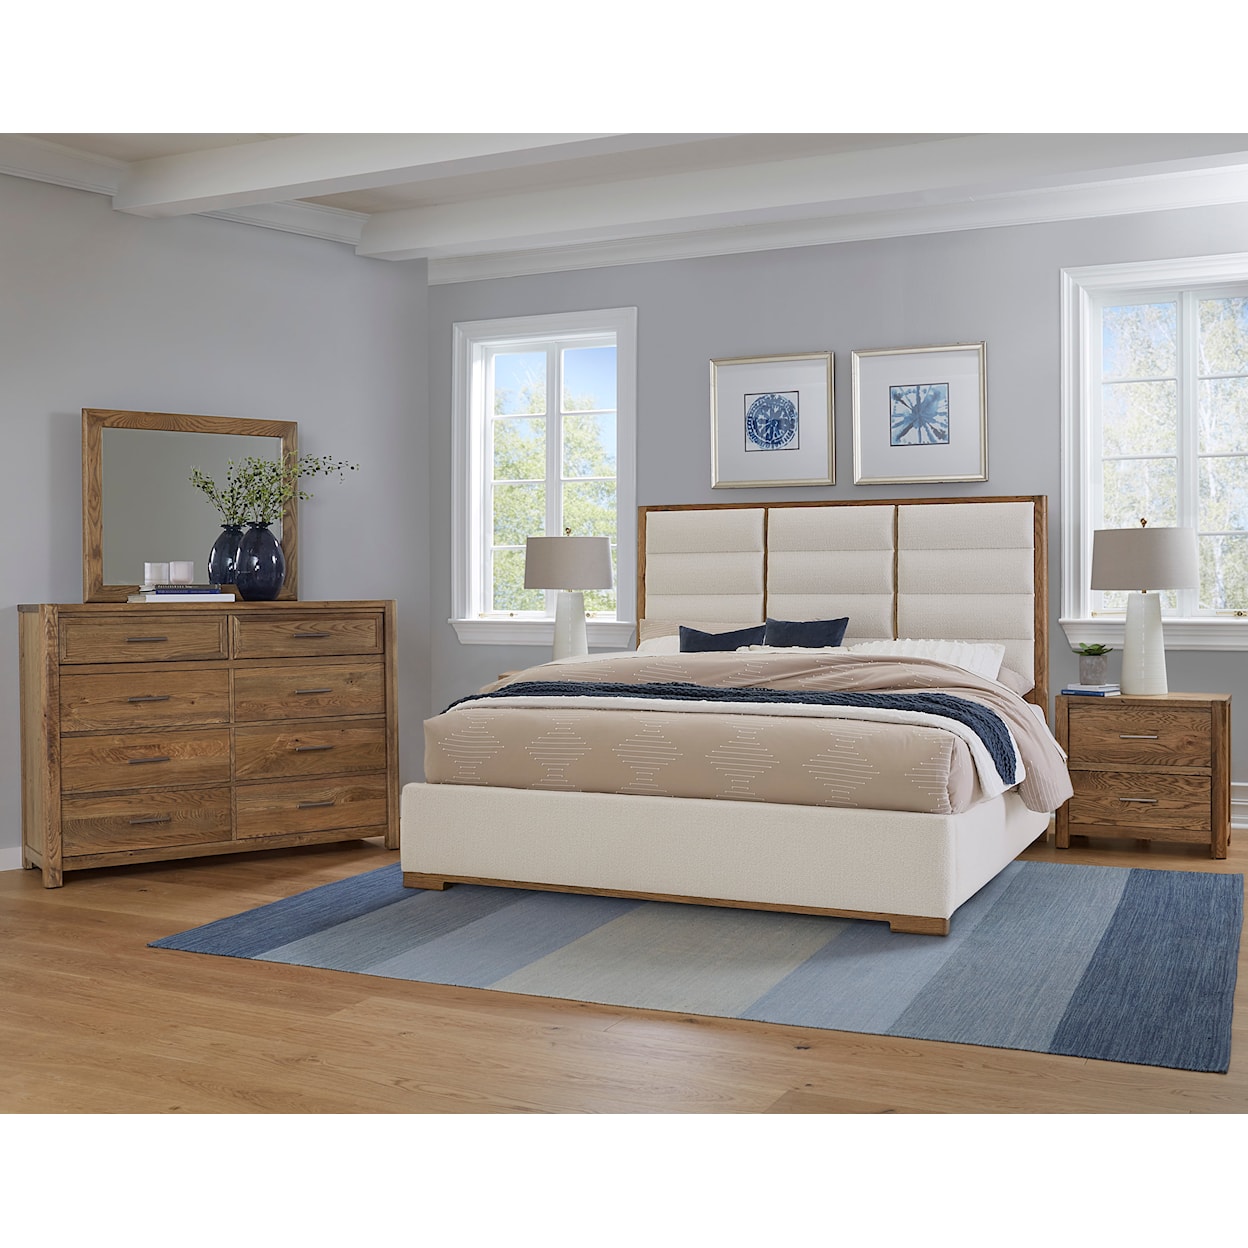 Laurel Mercantile Co. Crafted Oak Bedroom Dresser